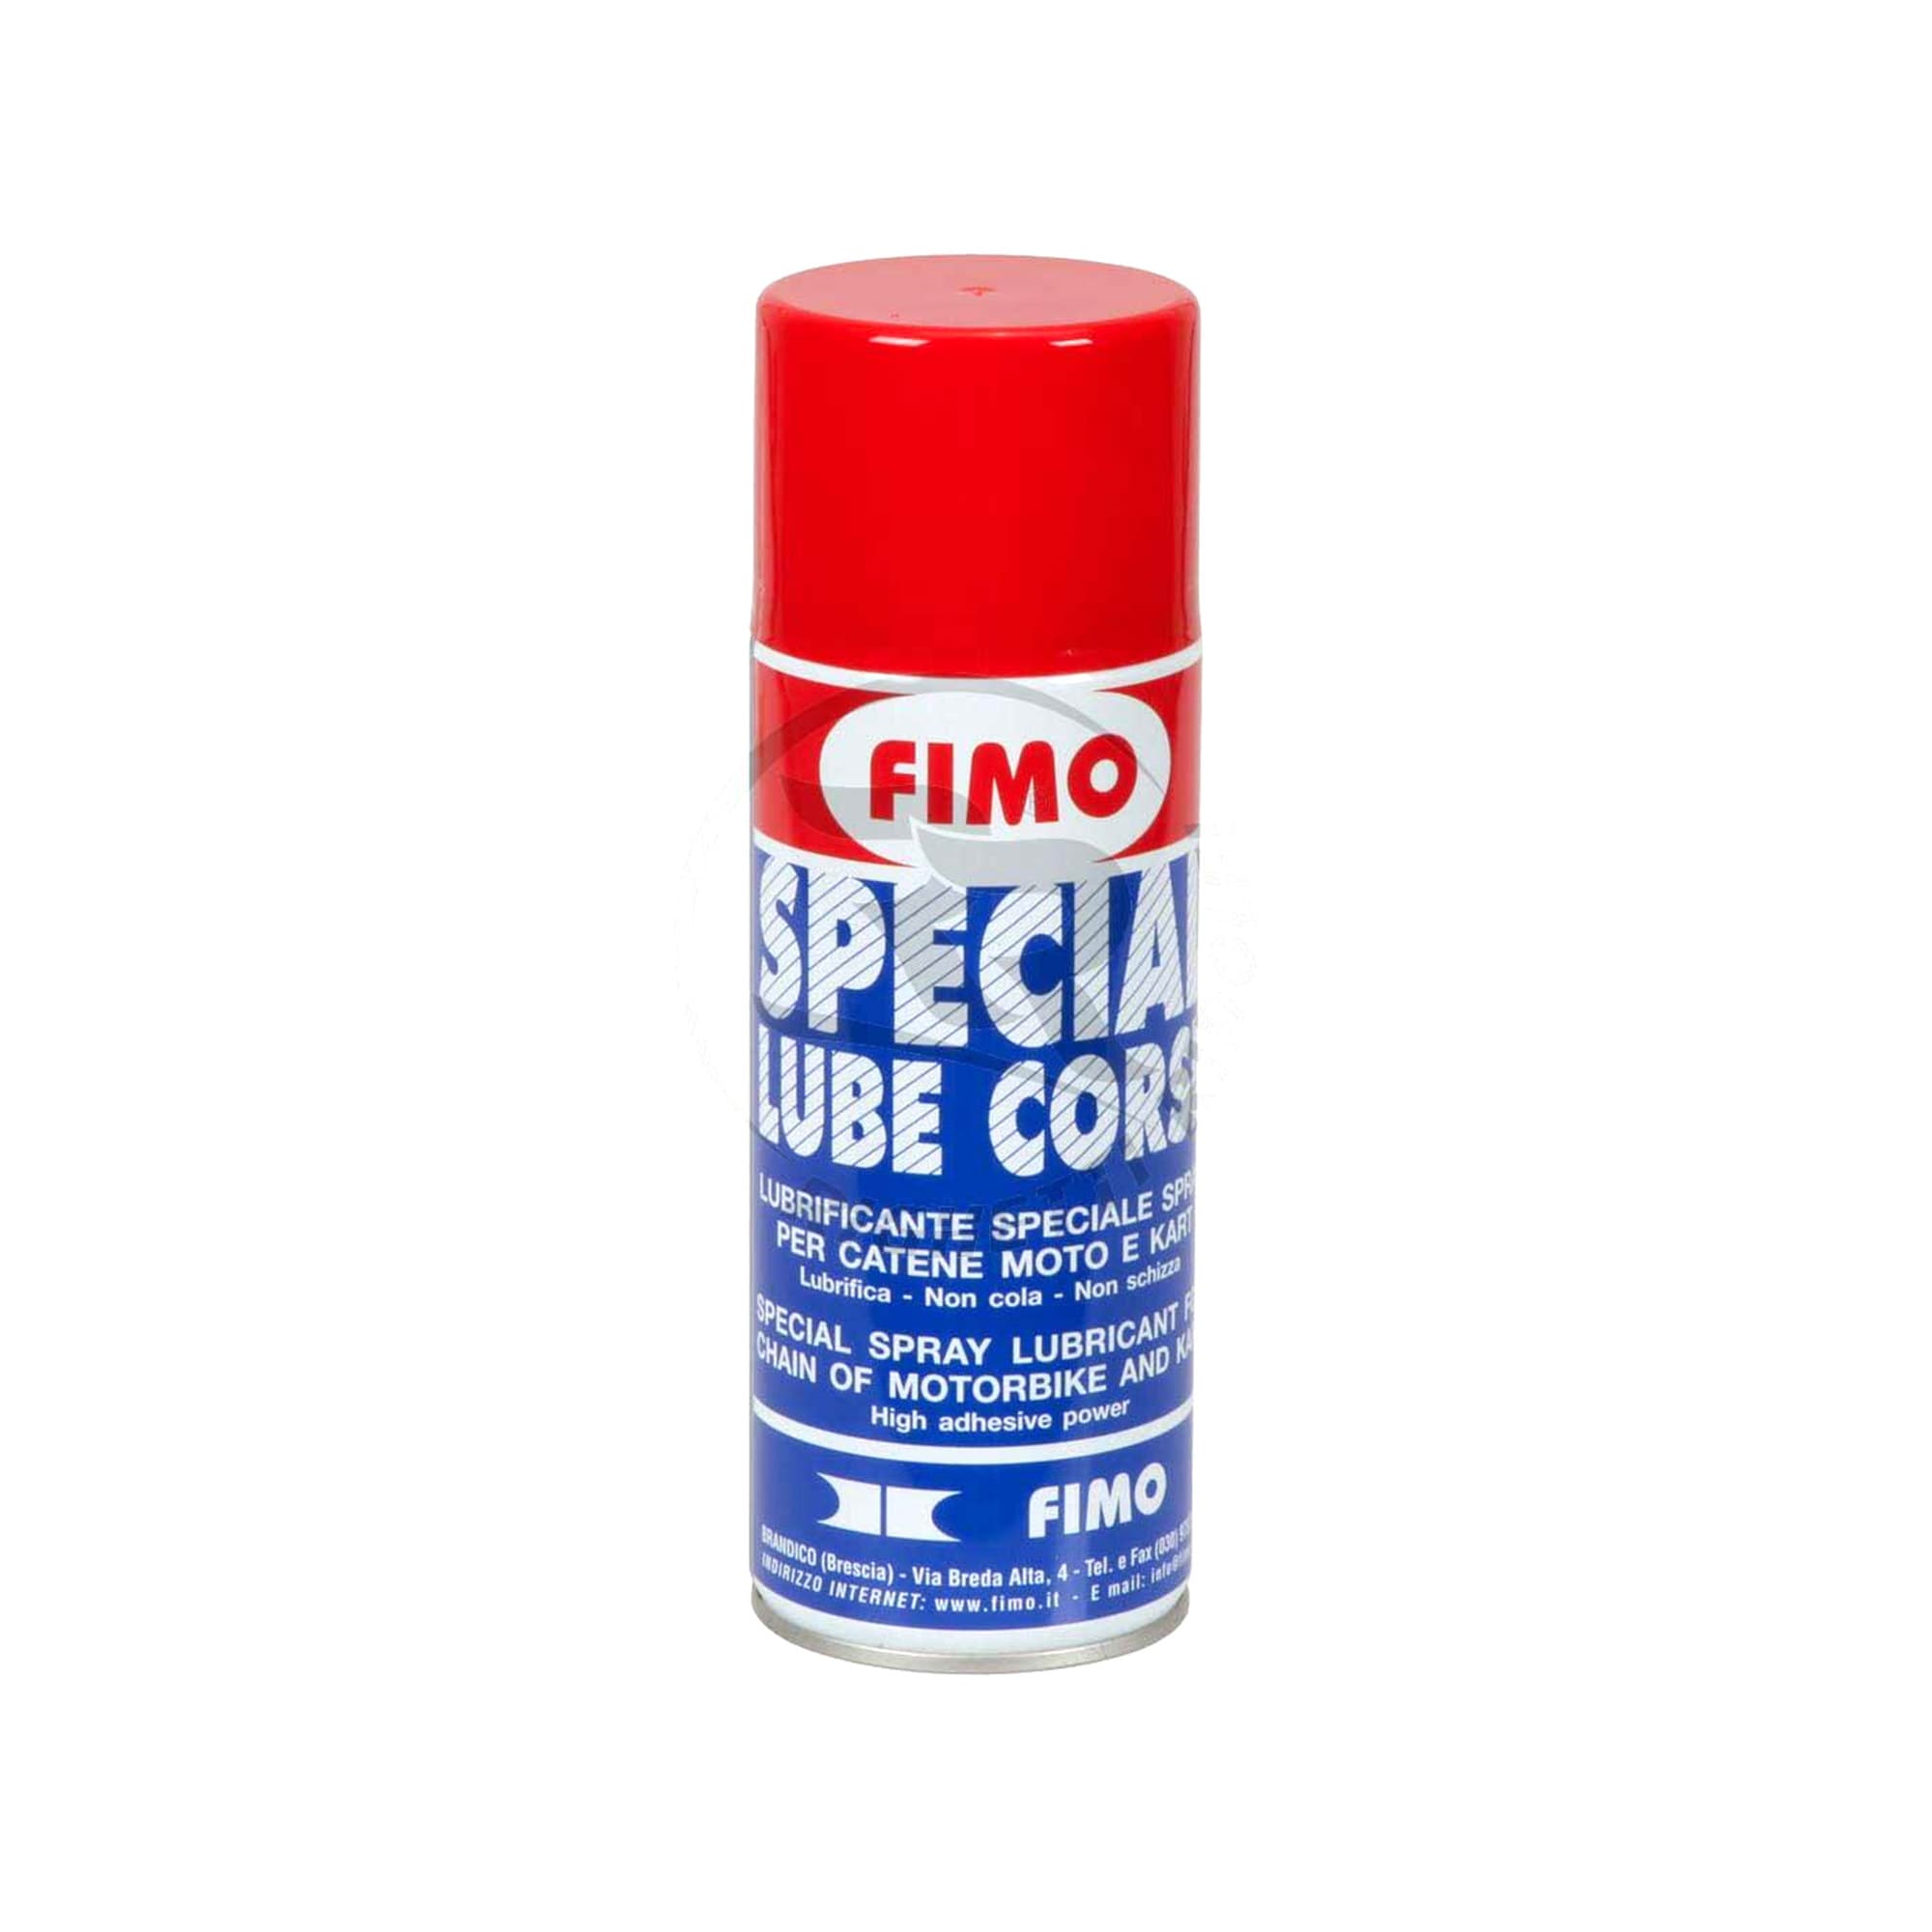 Kædespray FI.MO Special Lube Corse 400 ml